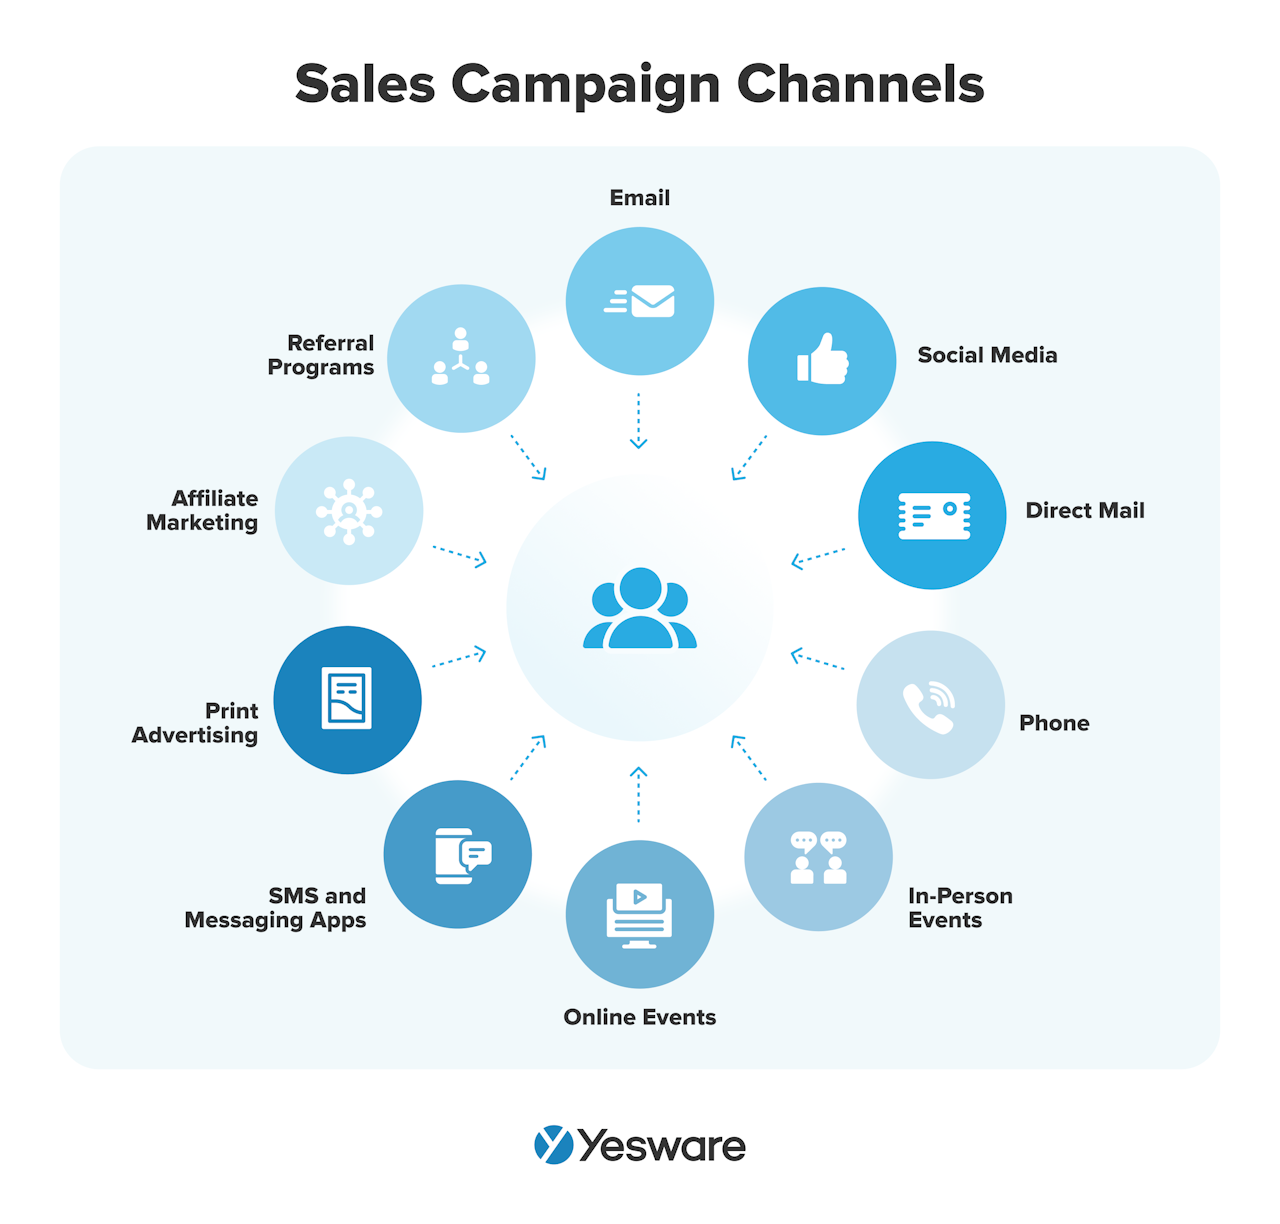 Sales campaign channels